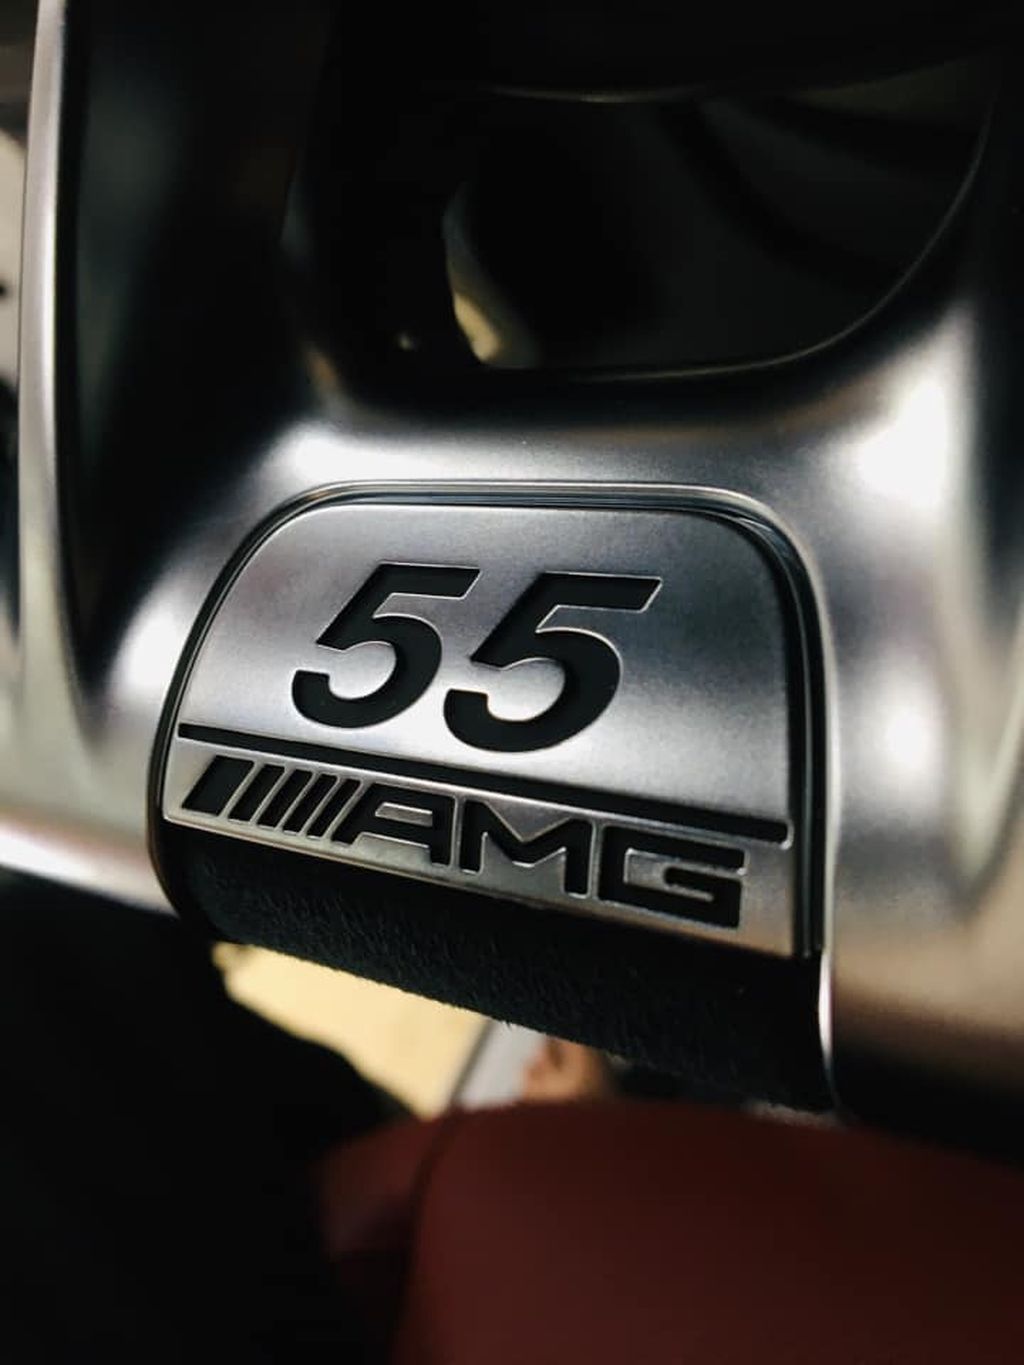 Mercedes-AMG G63 Edition 55 bản giới hạn chỉ có 10 chiếc tại Việt Nam, riêng Thái Nguyên đã có tới 2 chiếc